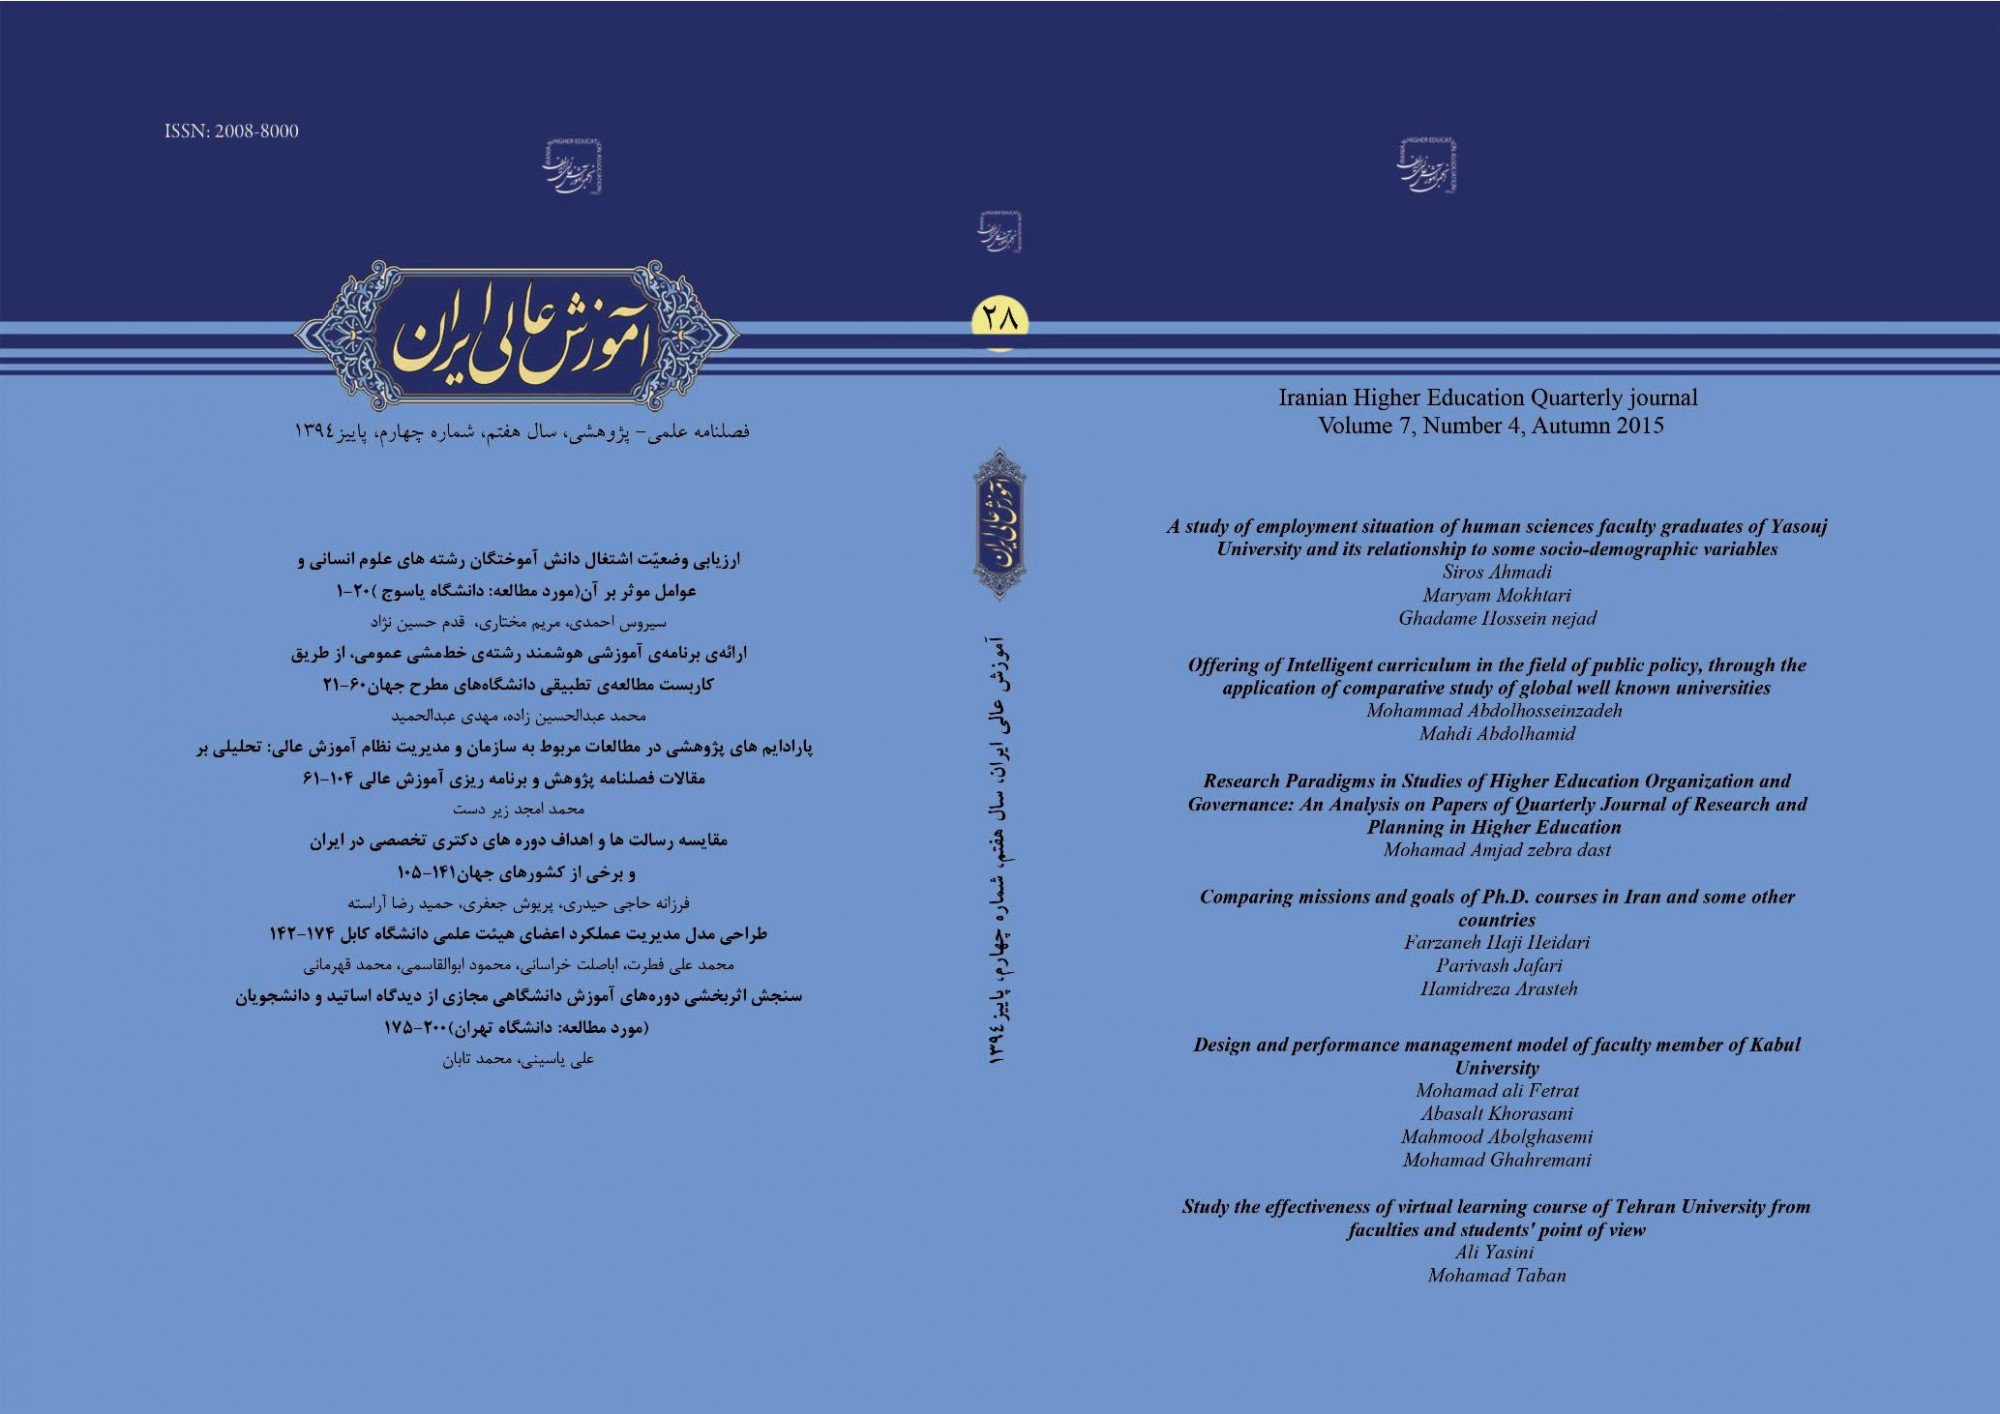 مقالات مجله آموزش عالی ایران، دوره 11، شماره 3 منتشر شد